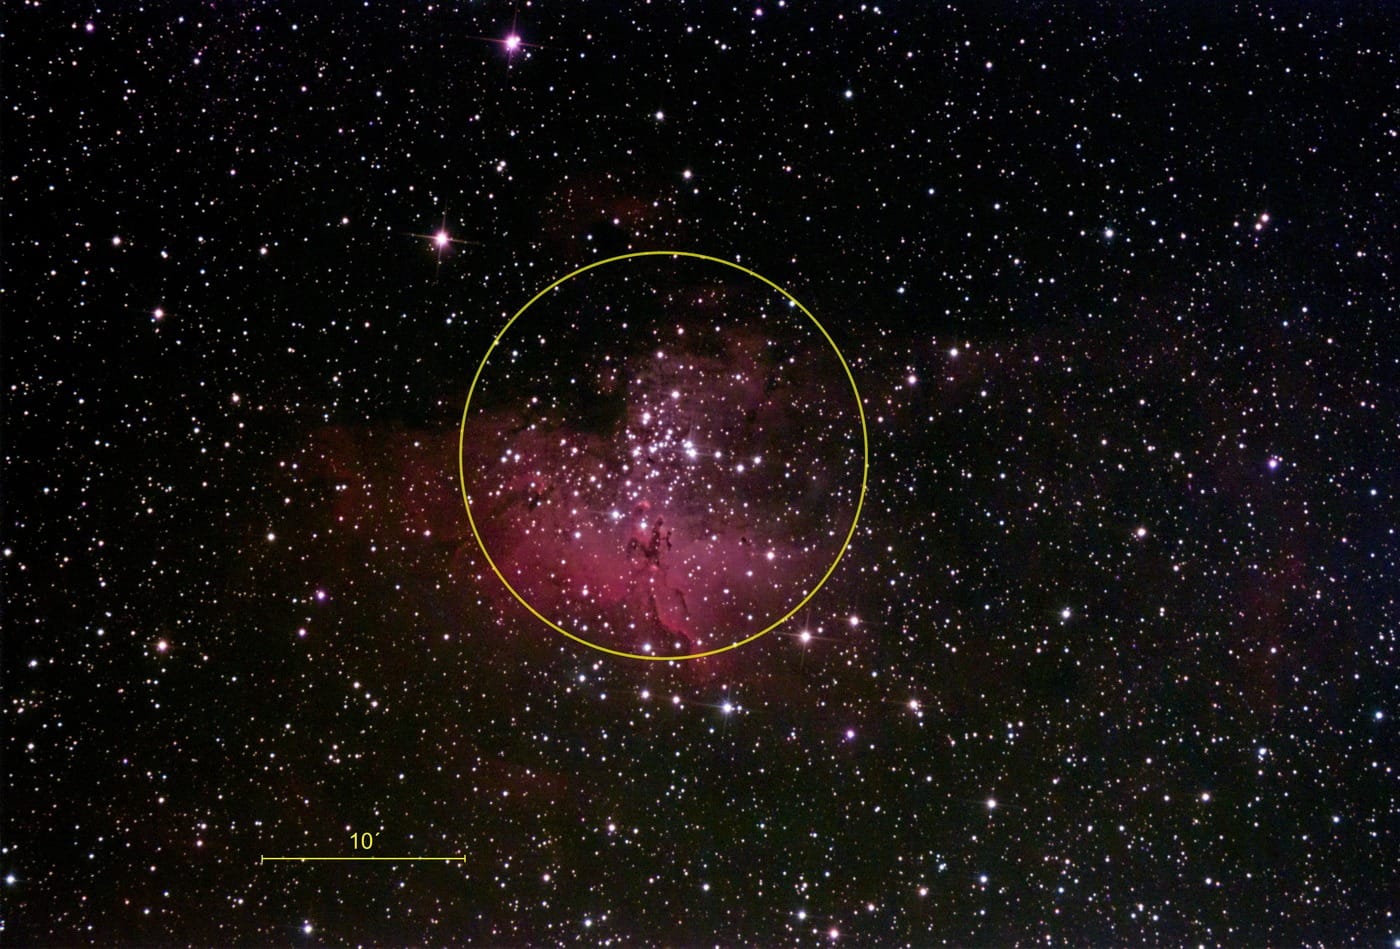 Der offene Sternhaufen M16 ist in einen rot leuchtenden Emissionsnebel eingebettet. Ein gelber Kreis markiert den ungefähren Rand des Sternhaufens.